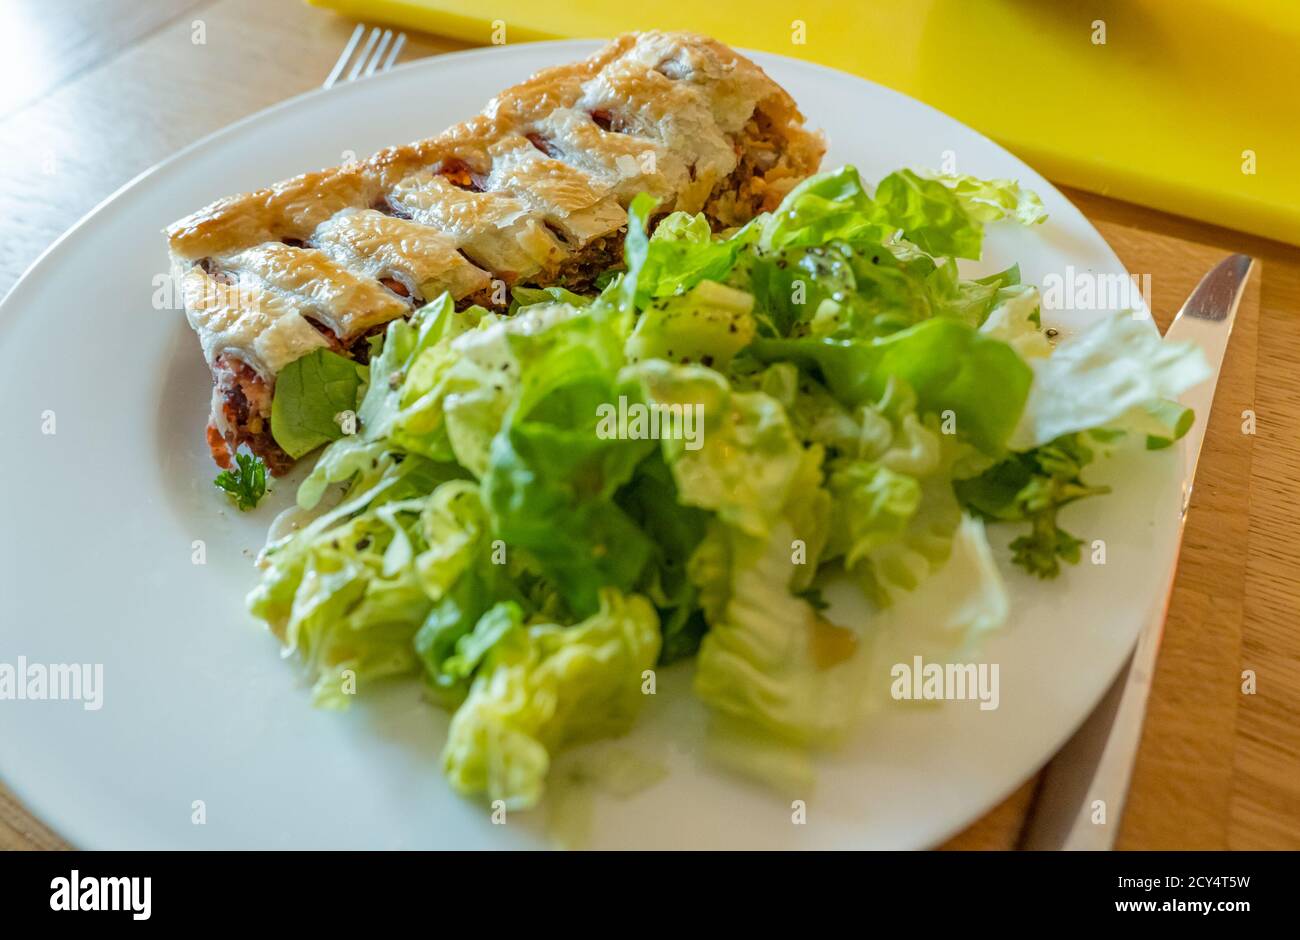 Cena a base di piatti bianchi che serve pasta sfoglia di barbabietola servita con insalata di lattuga verde Foto Stock